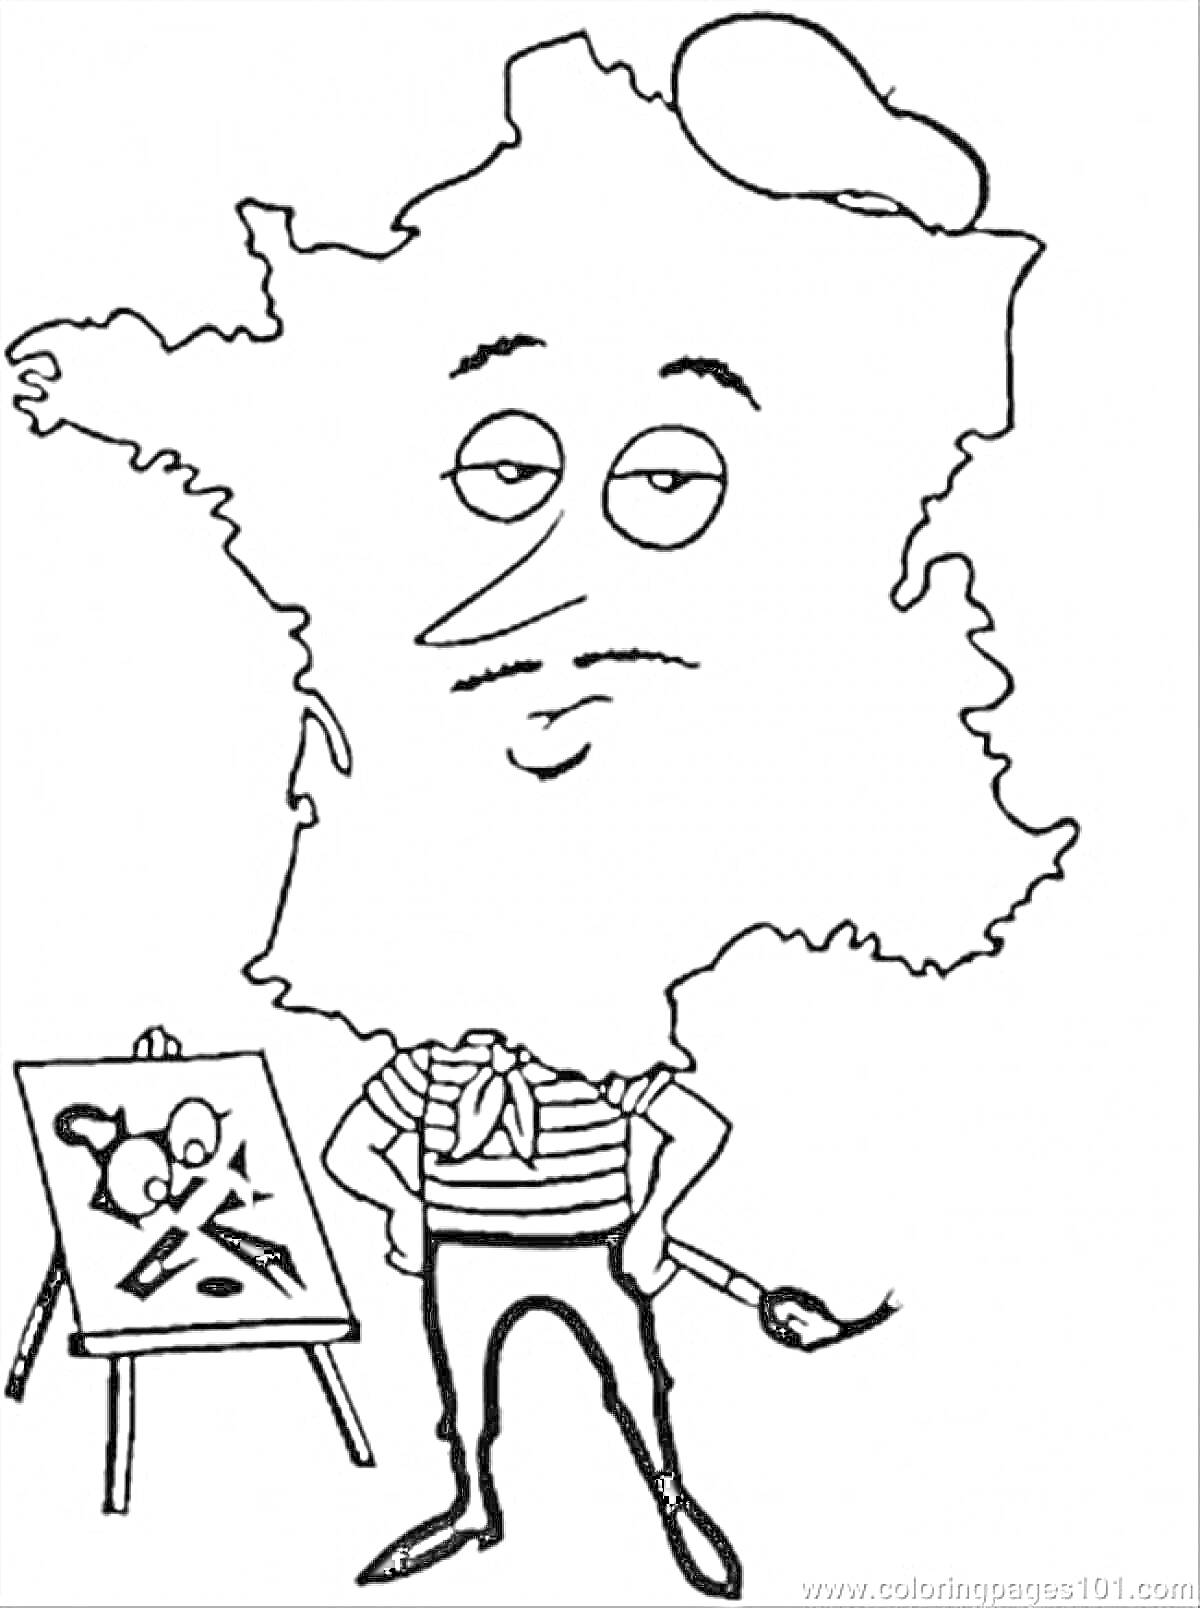 Карта Франции в образе художника с кистью и мольбертом.